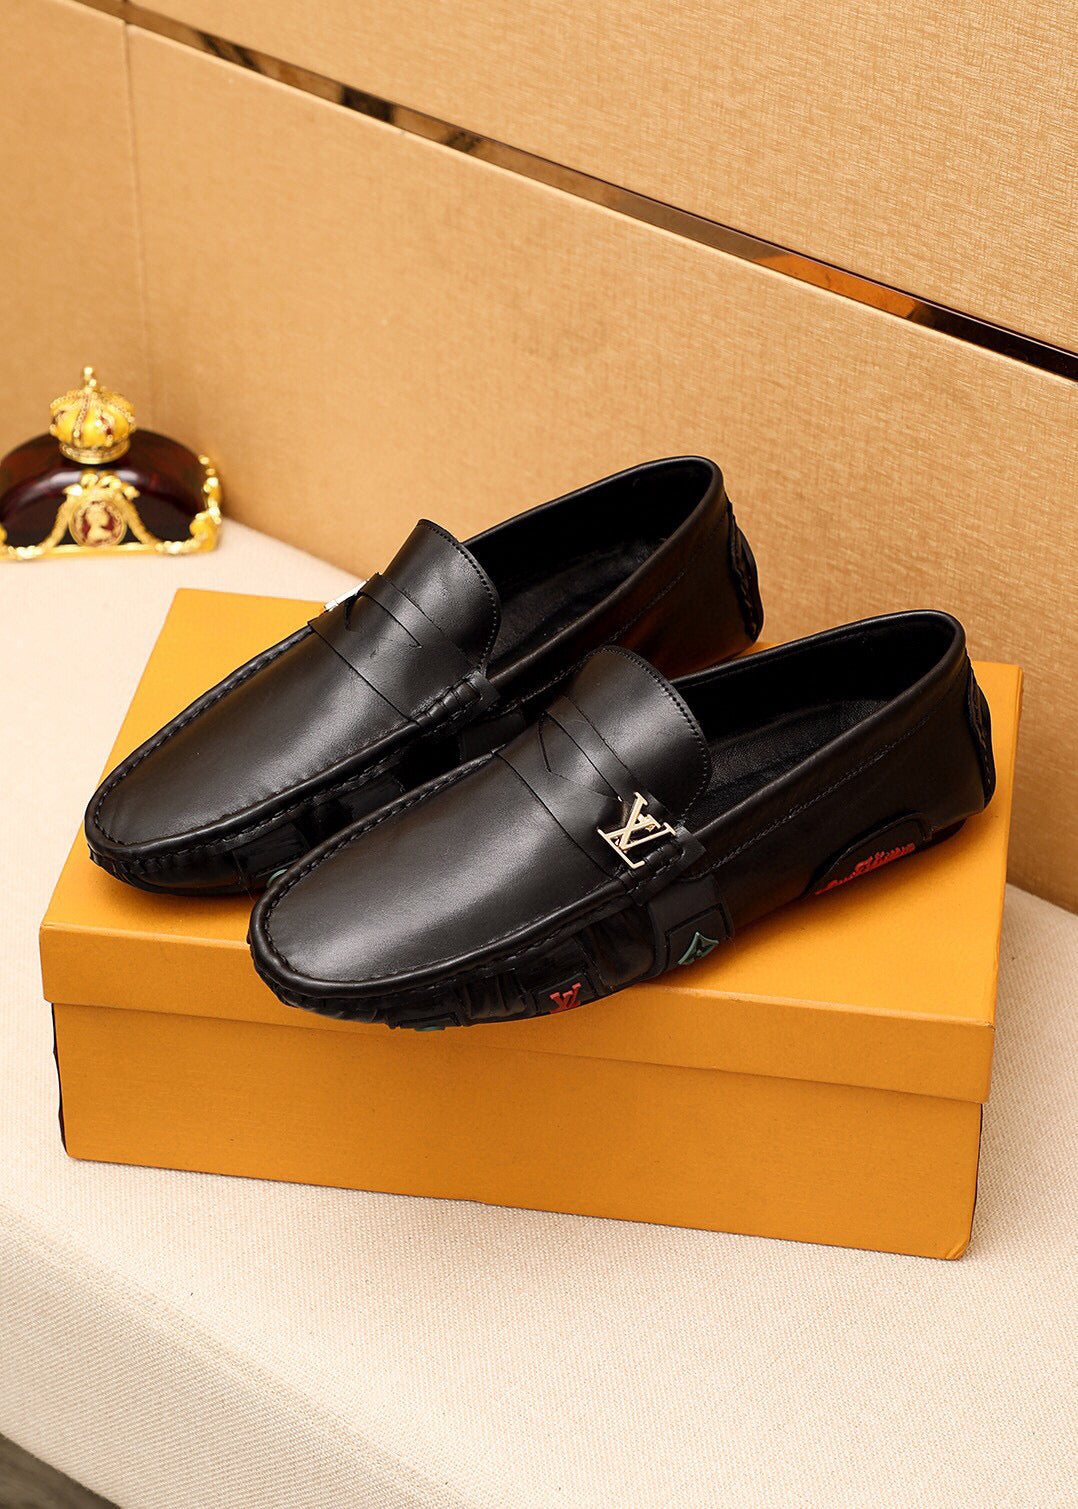 LV Louis Vuitton Men's 2021 NEW ARRIVALS MONTE CARLO Loafers Shoes